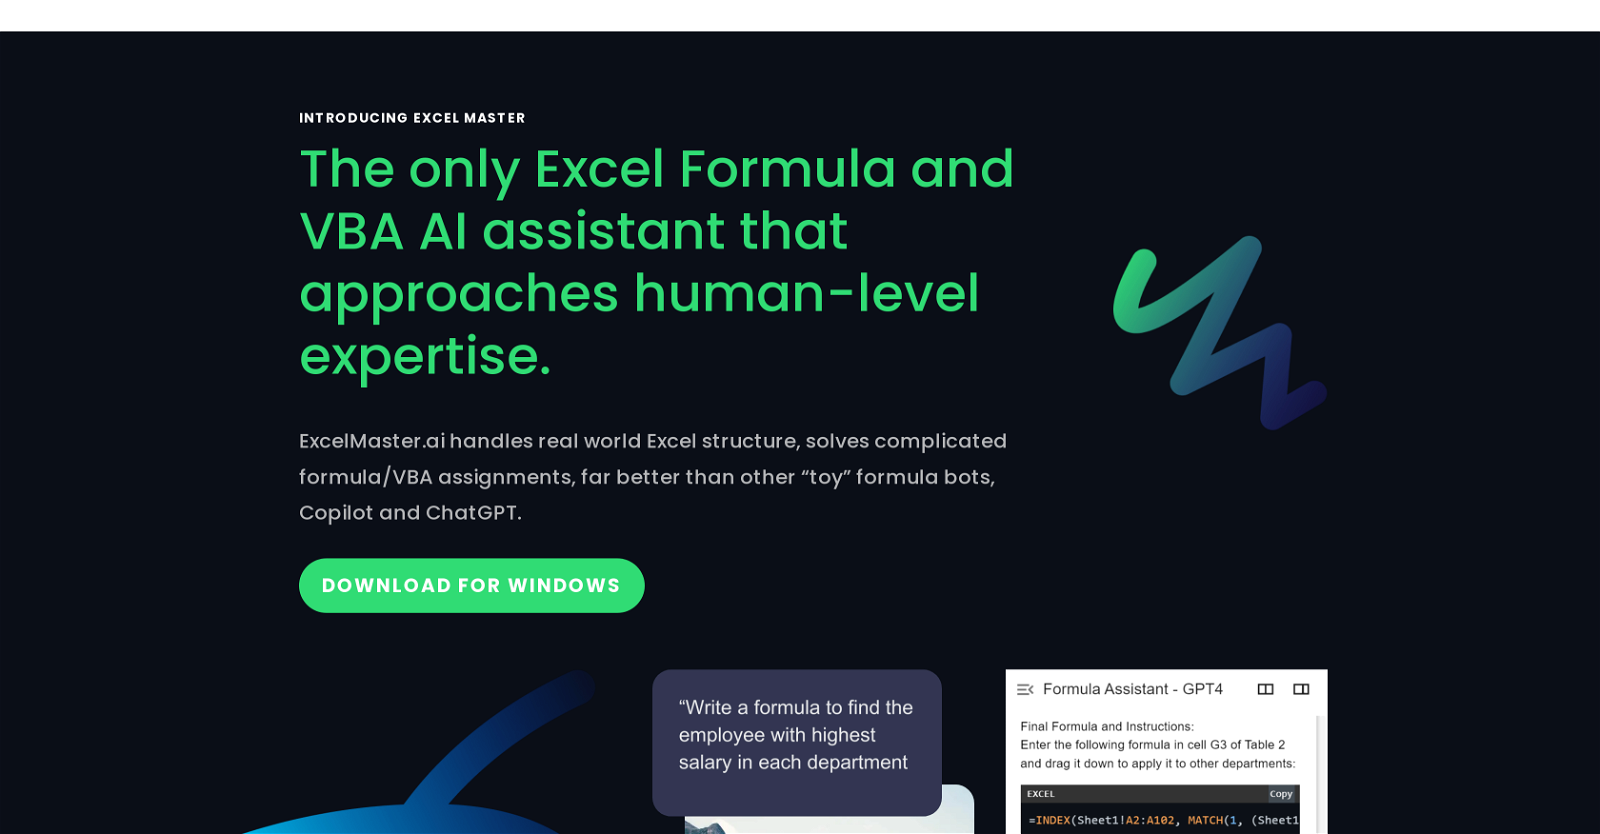 Excel Master website